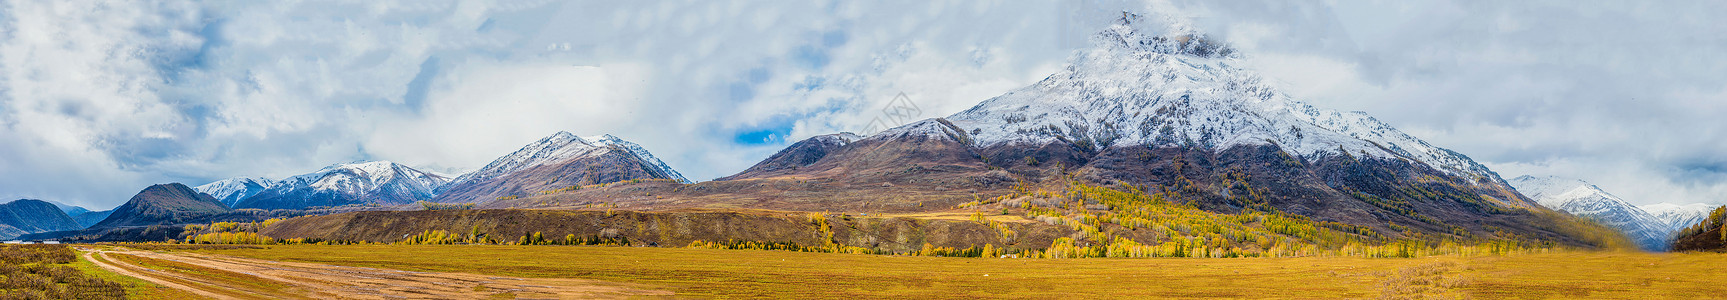 雪盛北疆秋色雪山全景背景